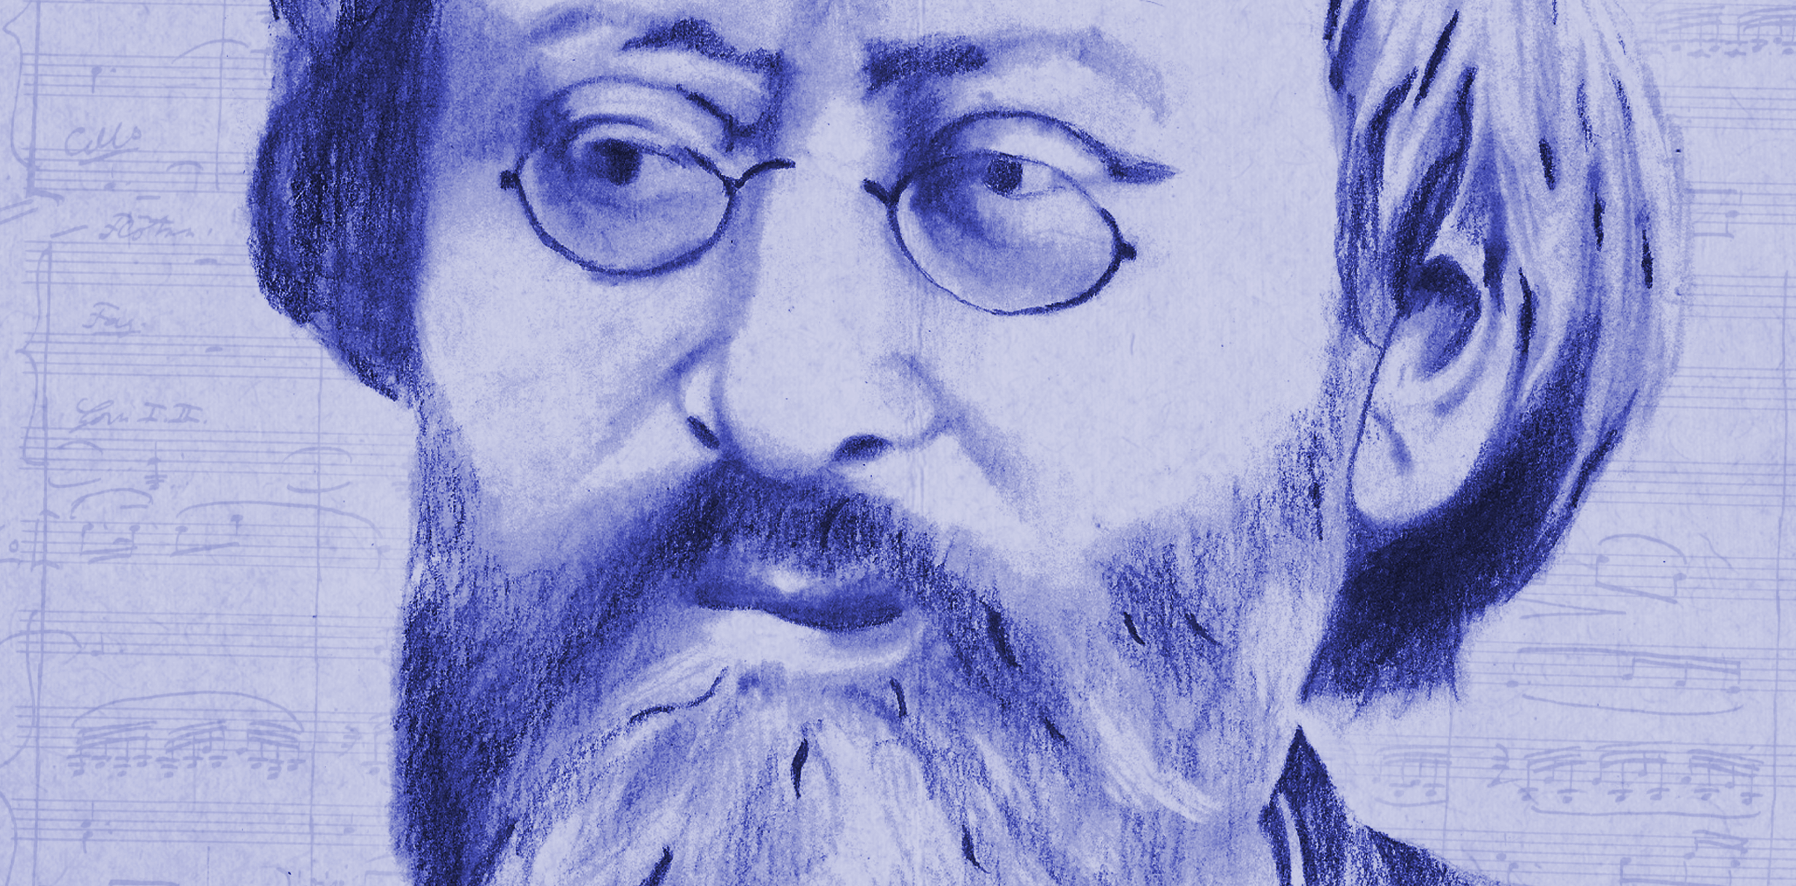 Portret van Max Bruch in blauw krijt